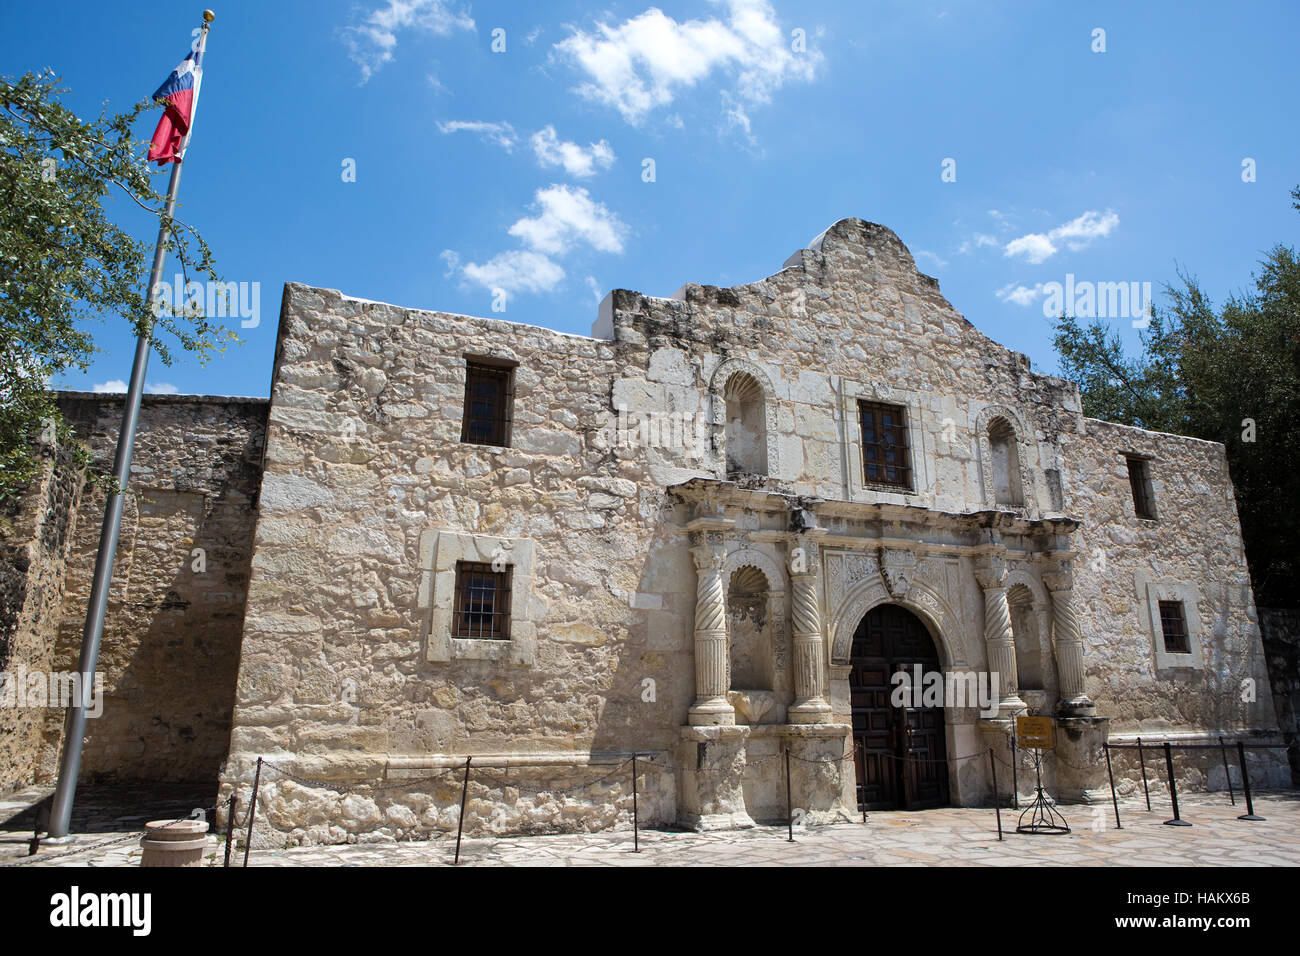 Die Alamo in San Antonio, Texas, wo die berühmte Schlacht für Unabhängigkeit von Texas gegen Mexiko im Jahre 1836 stattfand. Stockfoto